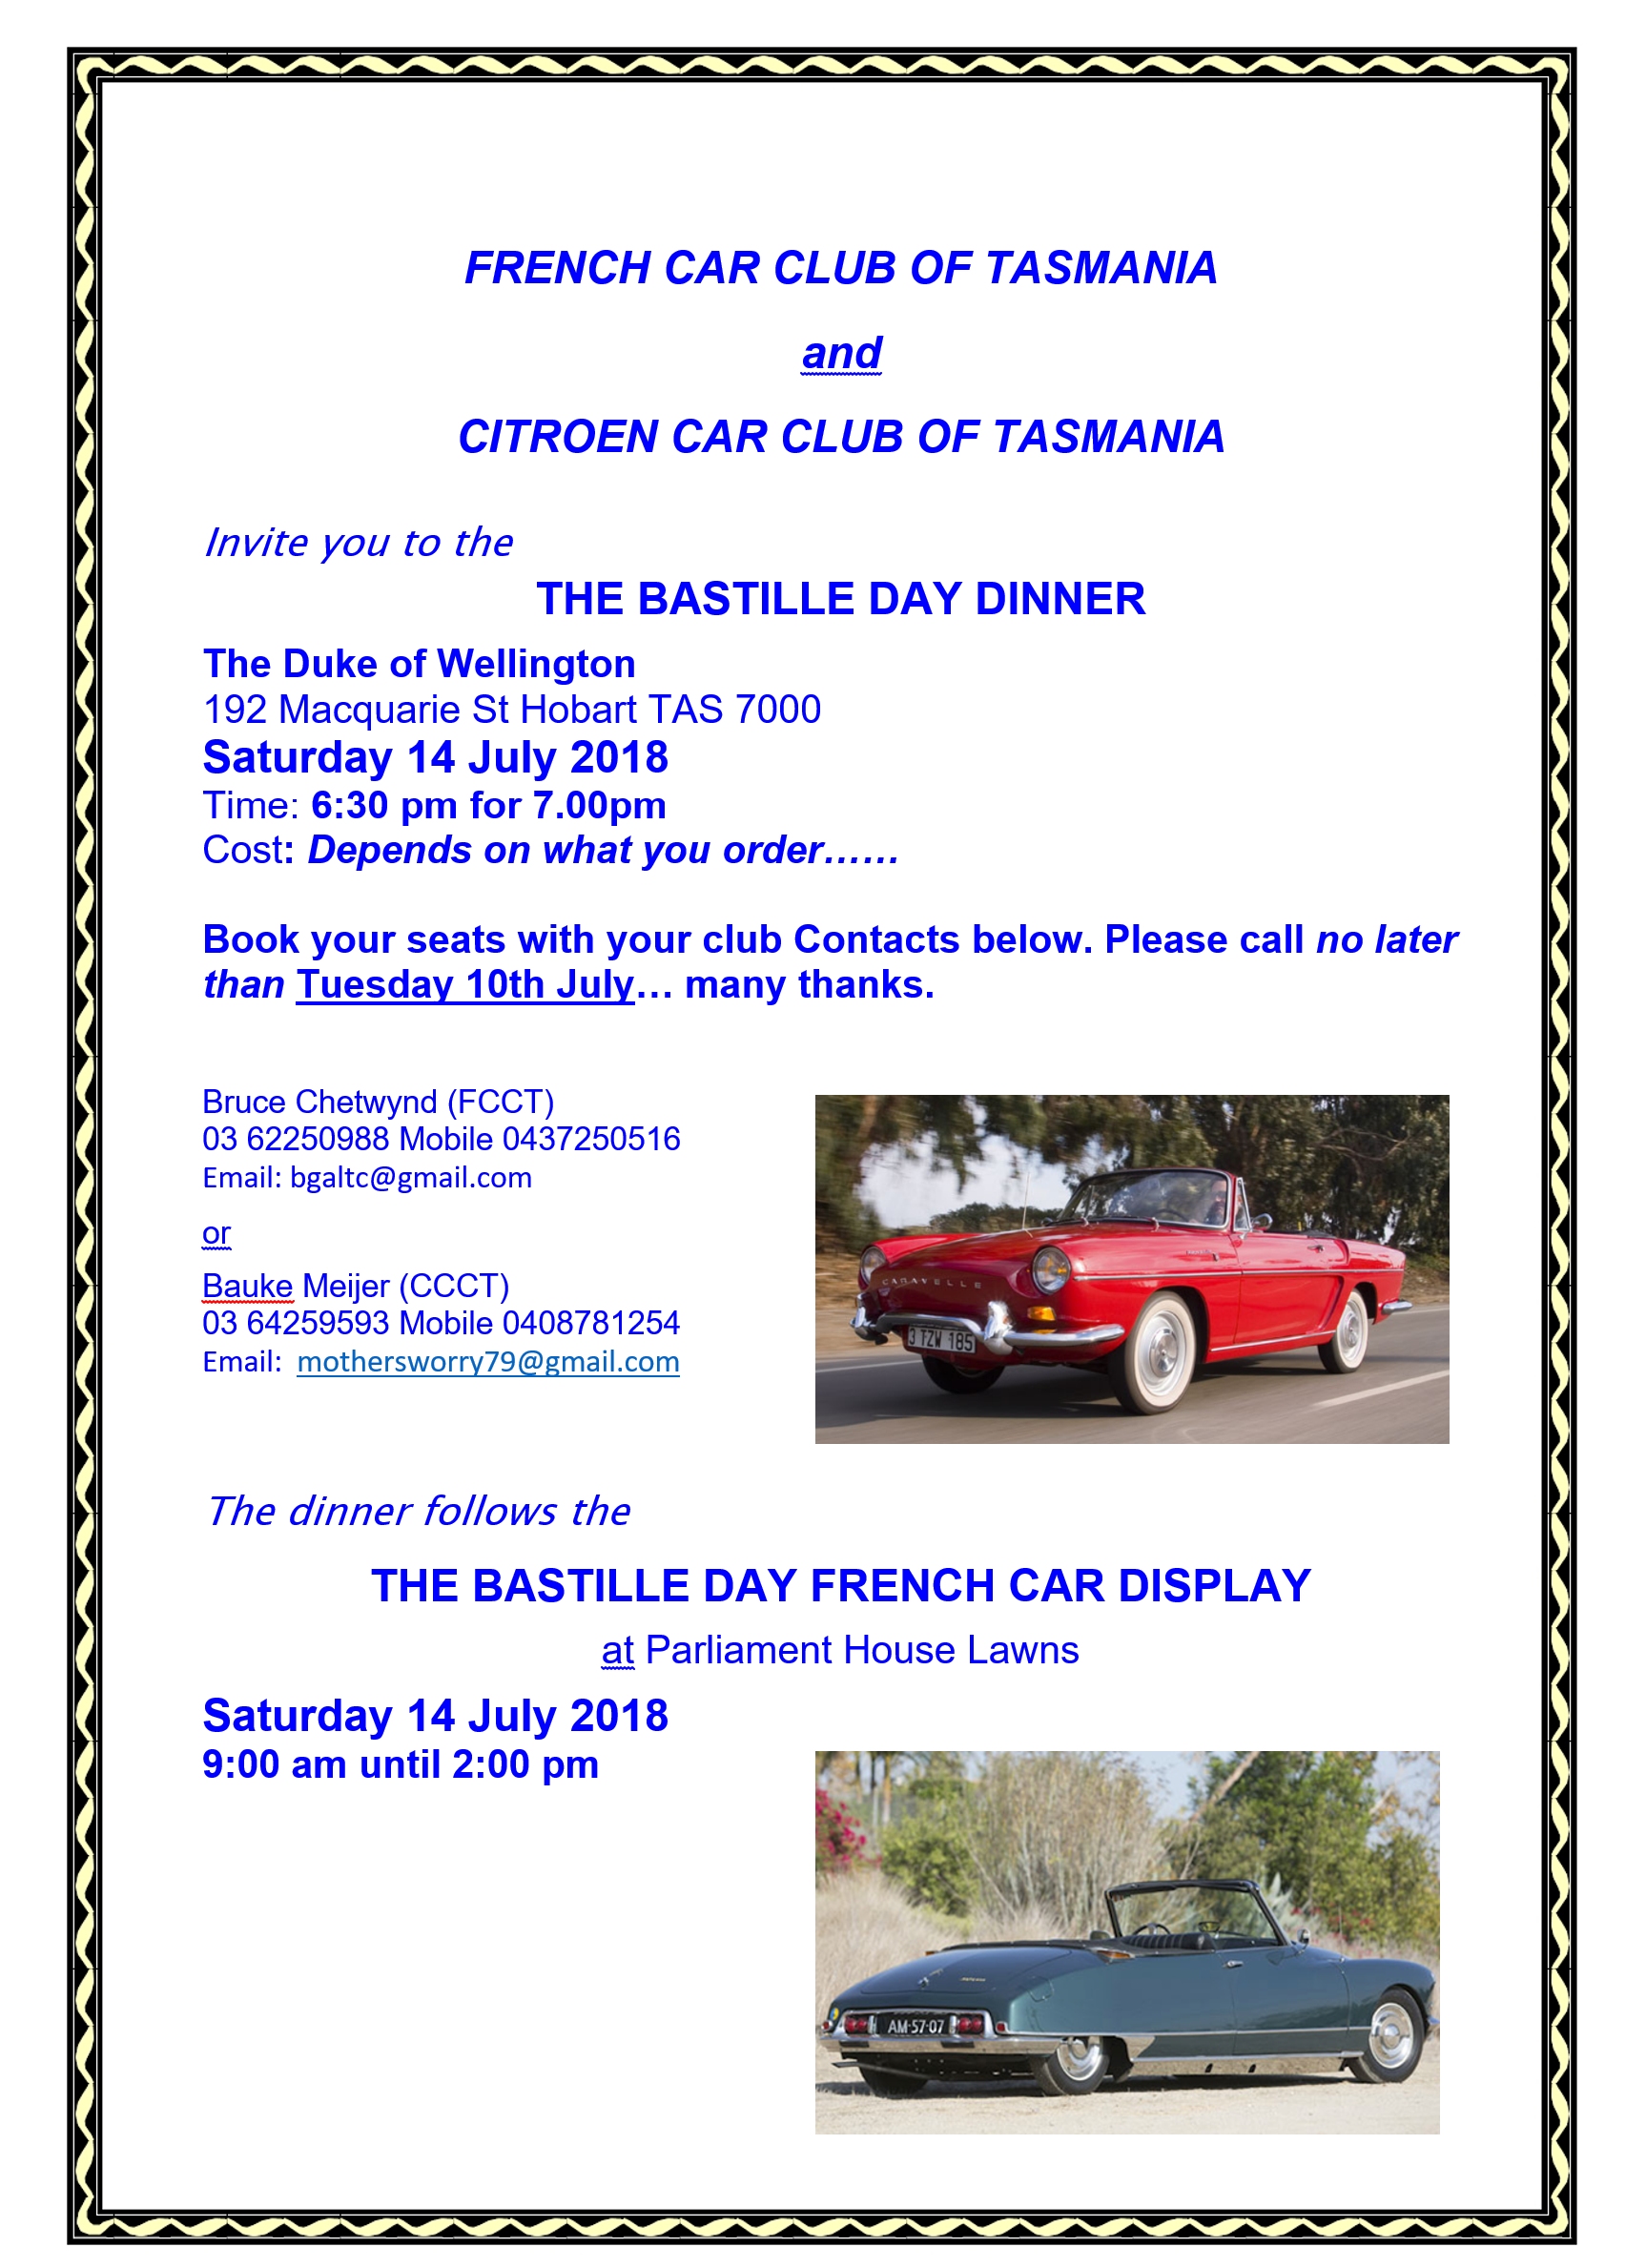  Flyer for 2018 Bastille Day dinner